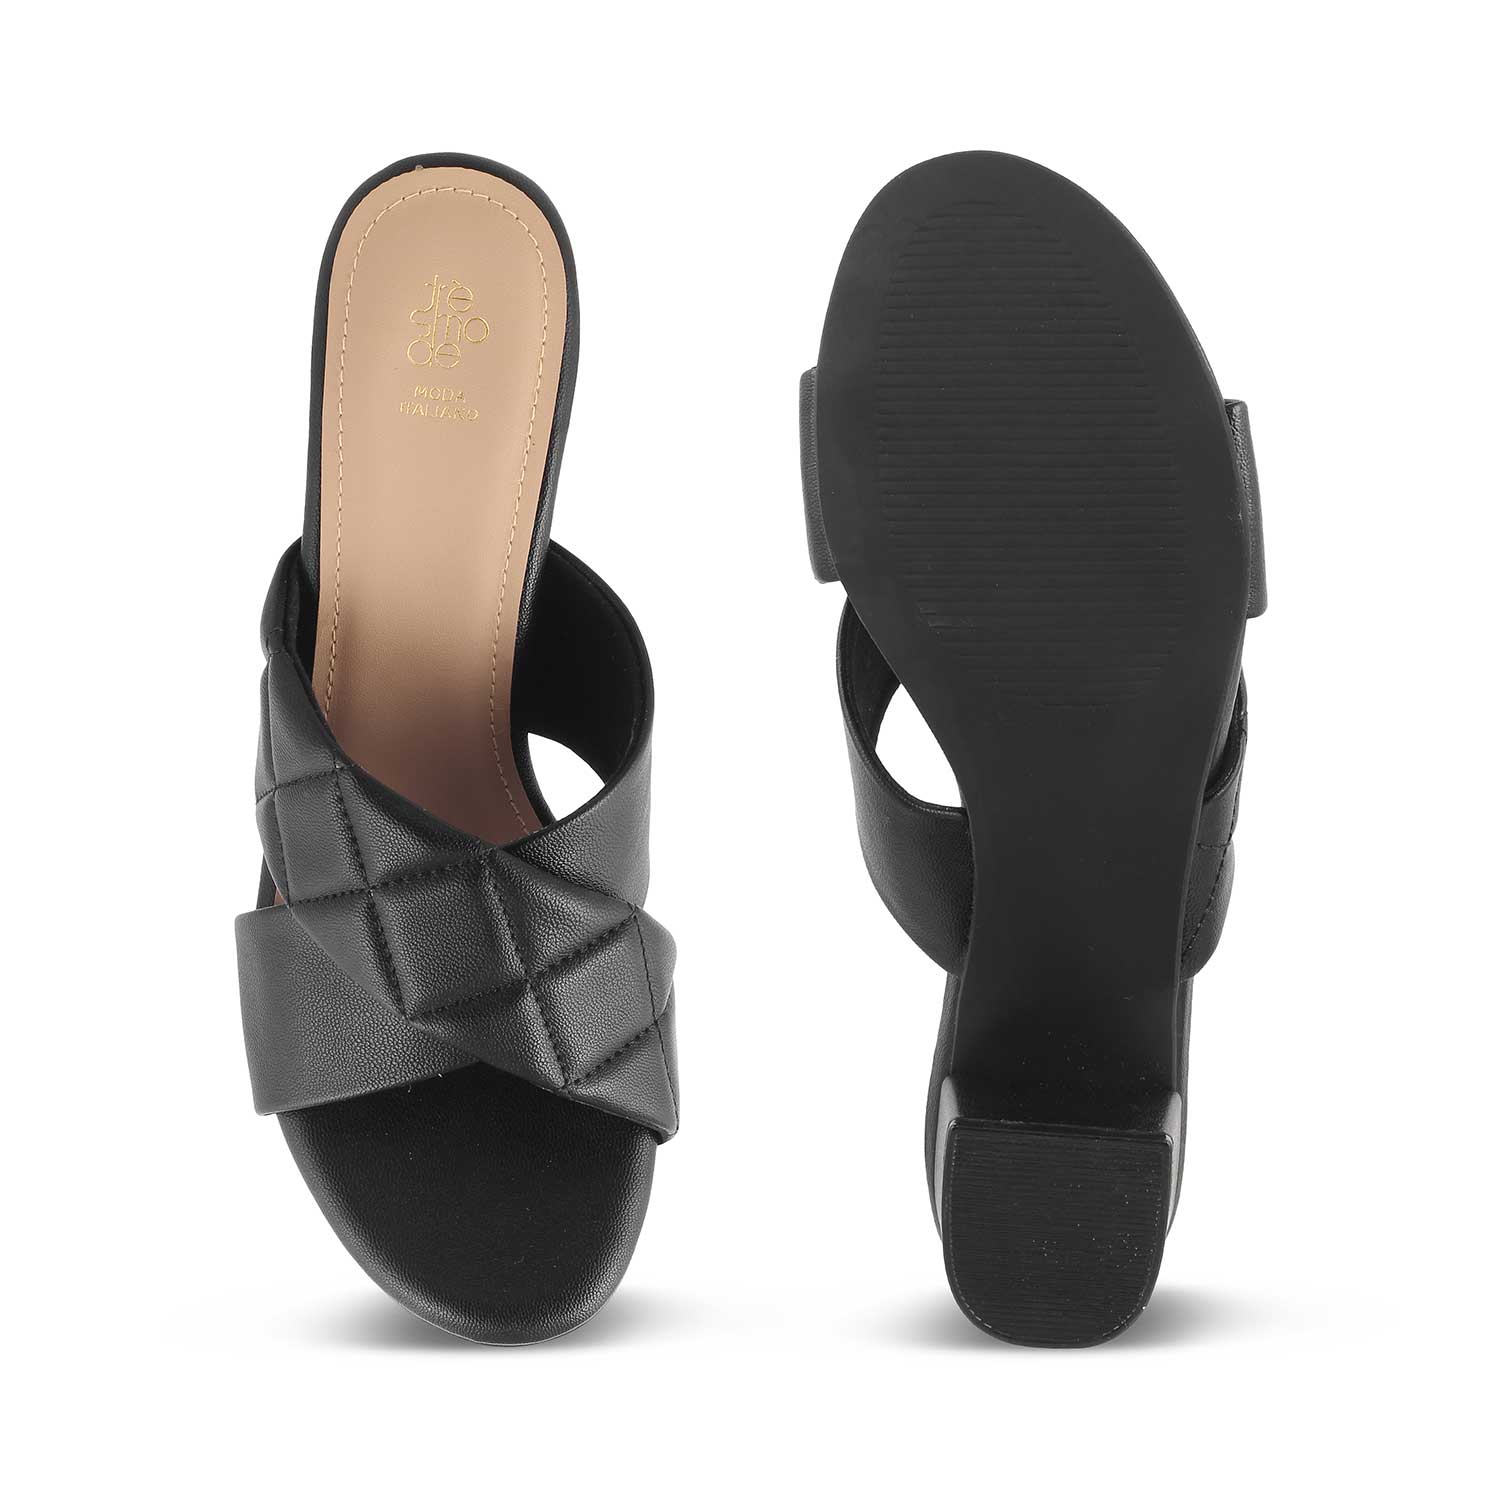 Tresmode-The Romi Black Women's Dress Block Heel Sandals Tresmode-Tresmode